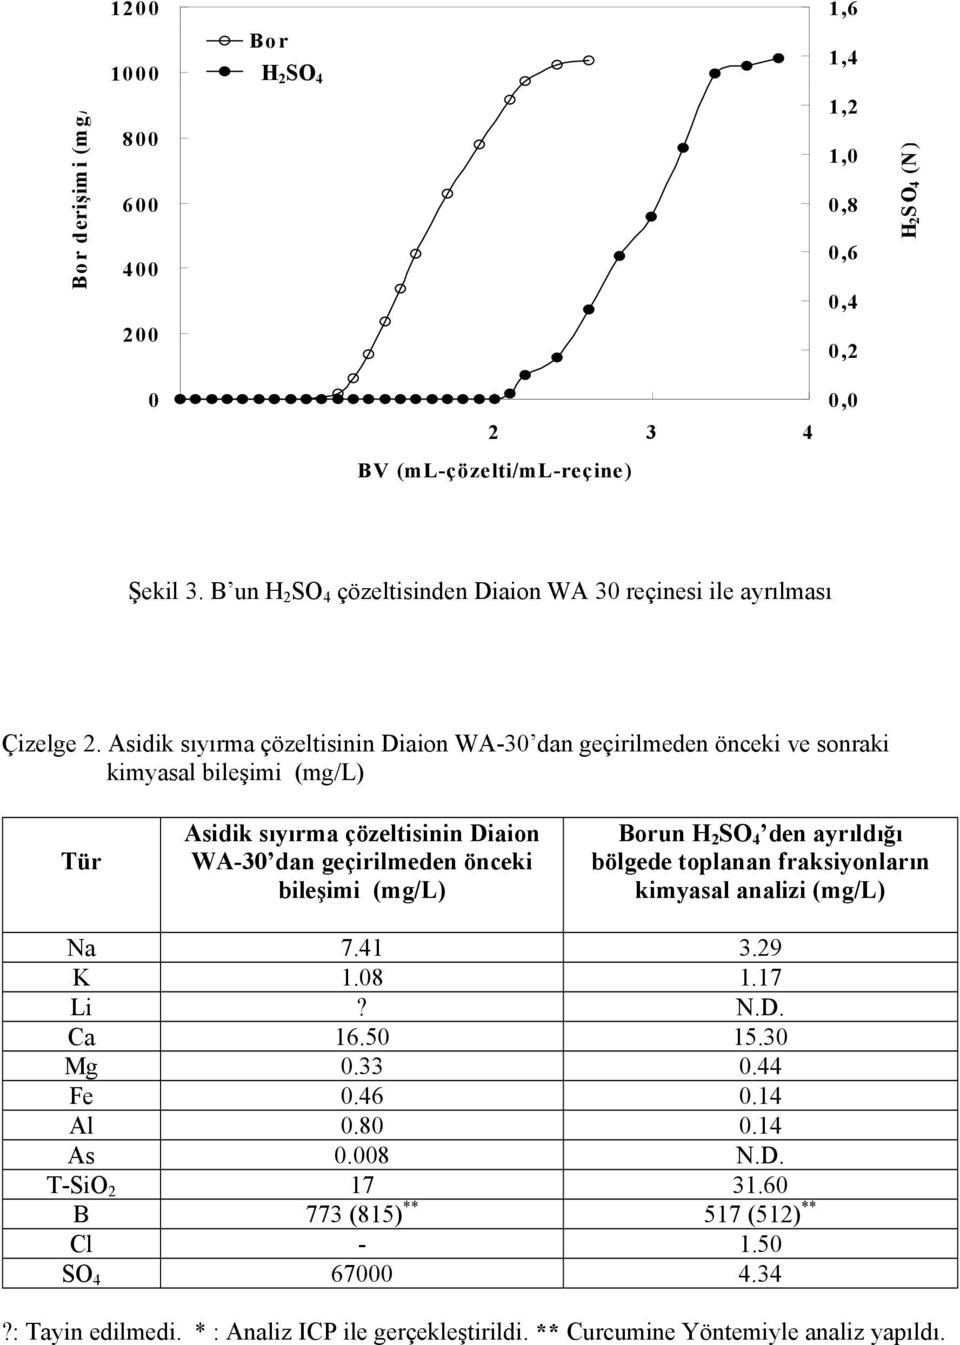 Asidik sıyırma çözeltisinin Diaion WA-30 dan geçirilmeden önceki ve sonraki kimyasal bileşimi (mg/l) Tür Asidik sıyırma çözeltisinin Diaion WA-30 dan geçirilmeden önceki bileşimi (mg/l) Borun H 2 SO